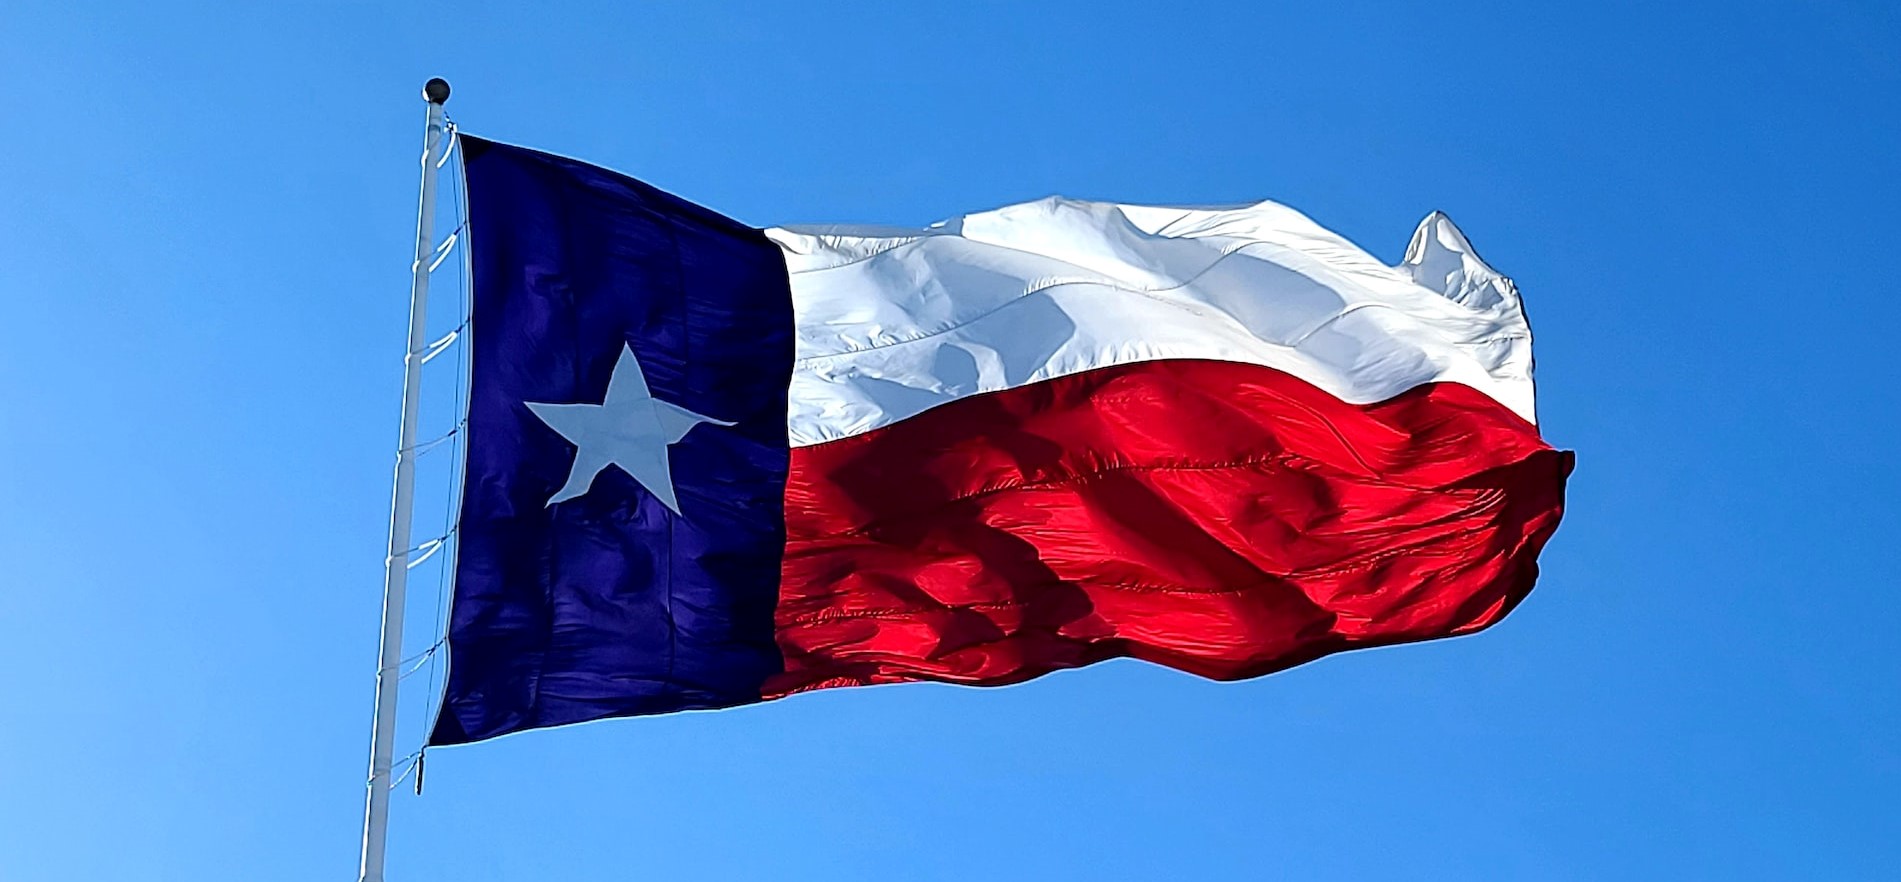 The Texas flag | Goodwill Car Donations